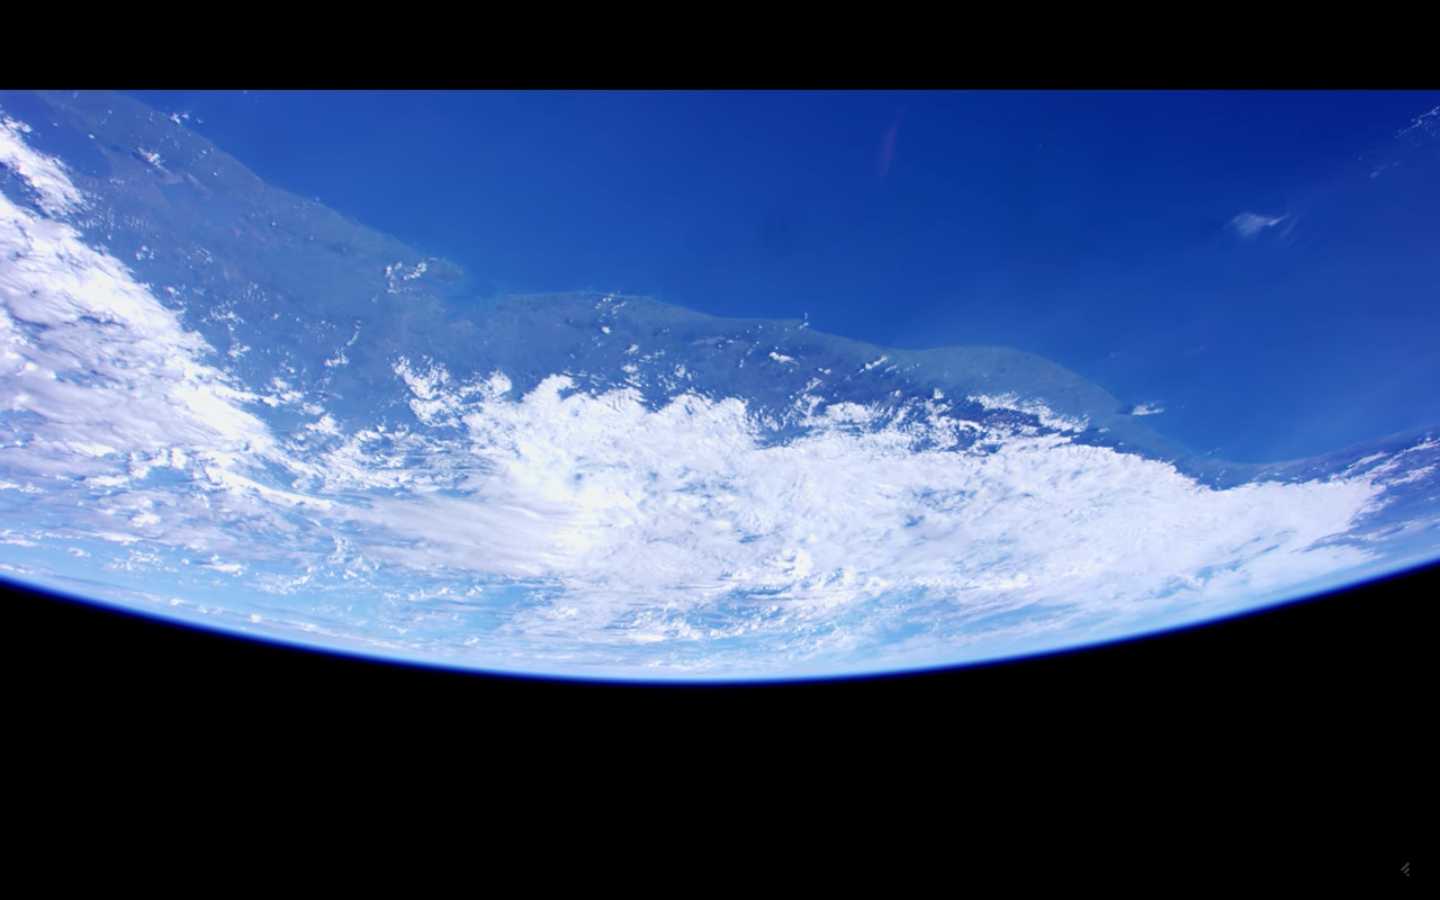 Impresionante video en 4K del planeta tierra